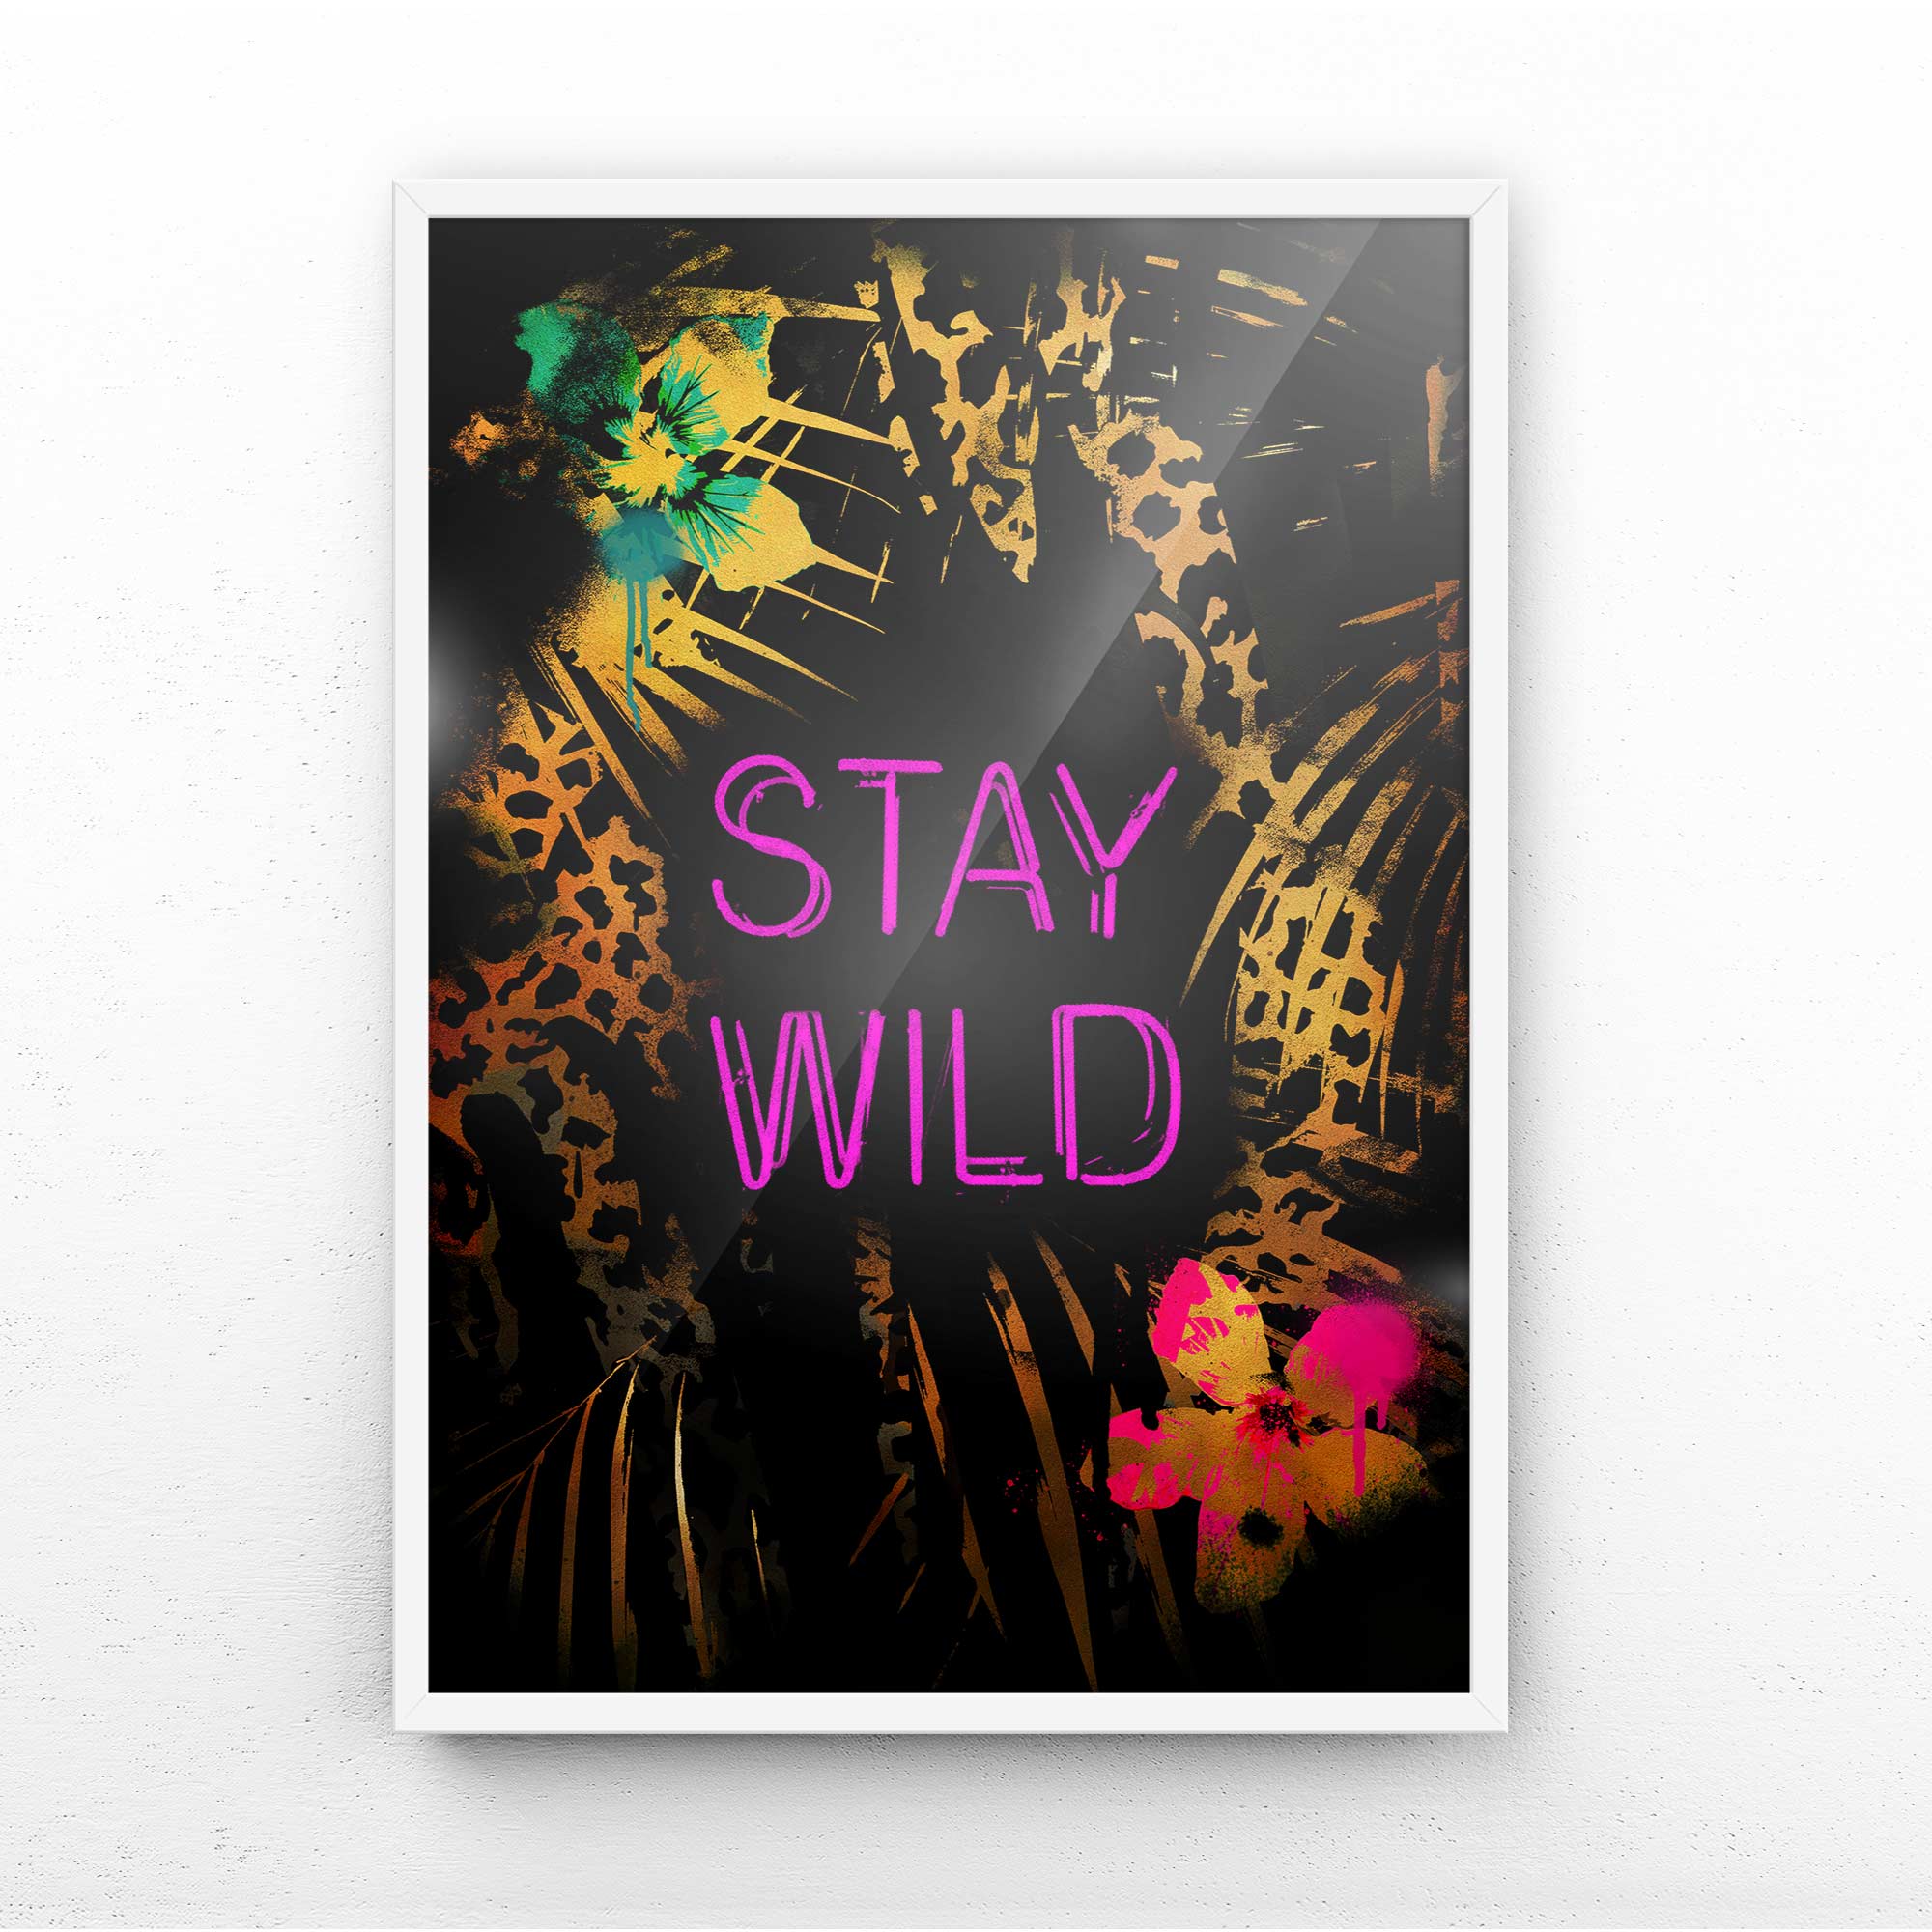 Stay wild framed art print